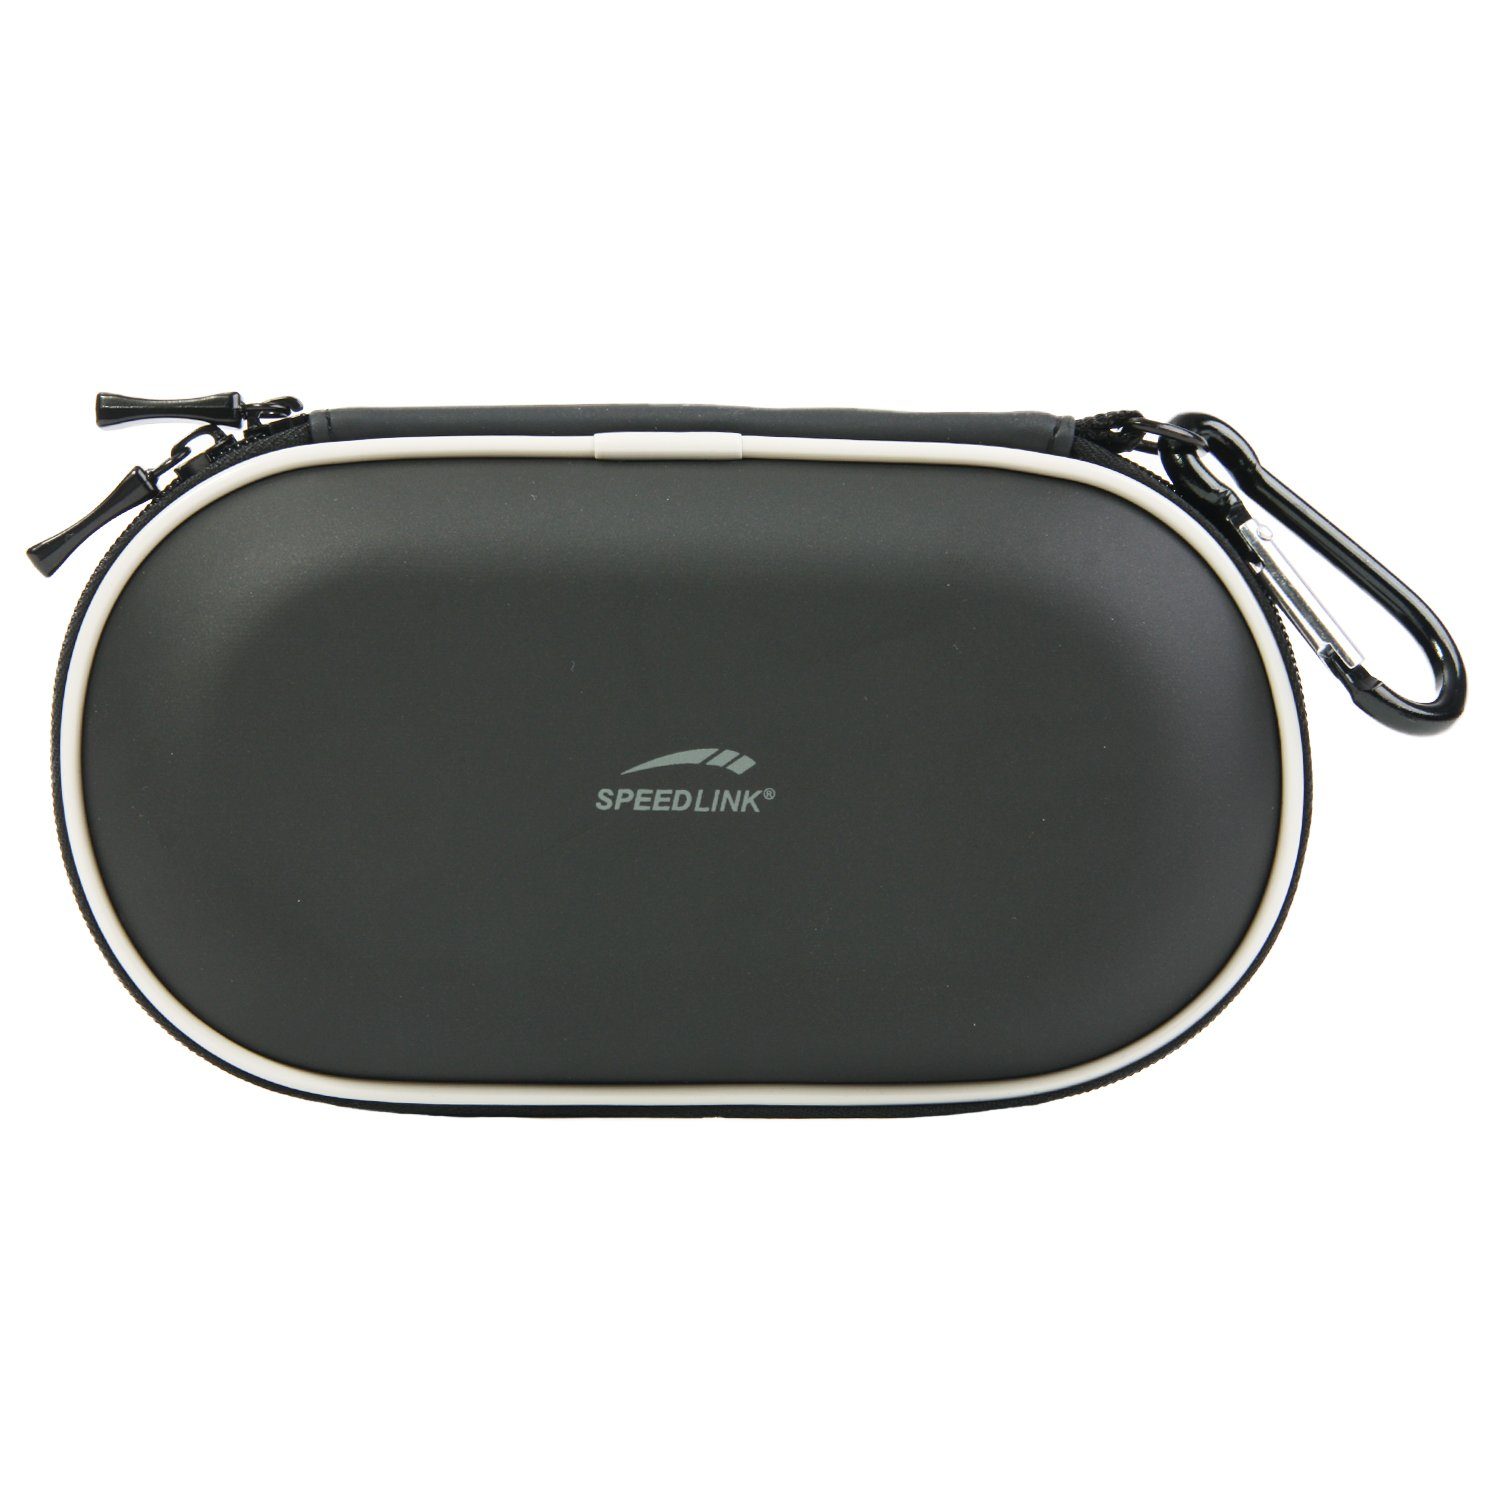 Speedlink Konsolen-Tasche Carry Case Hard-Case Tasche Bag Schwarz